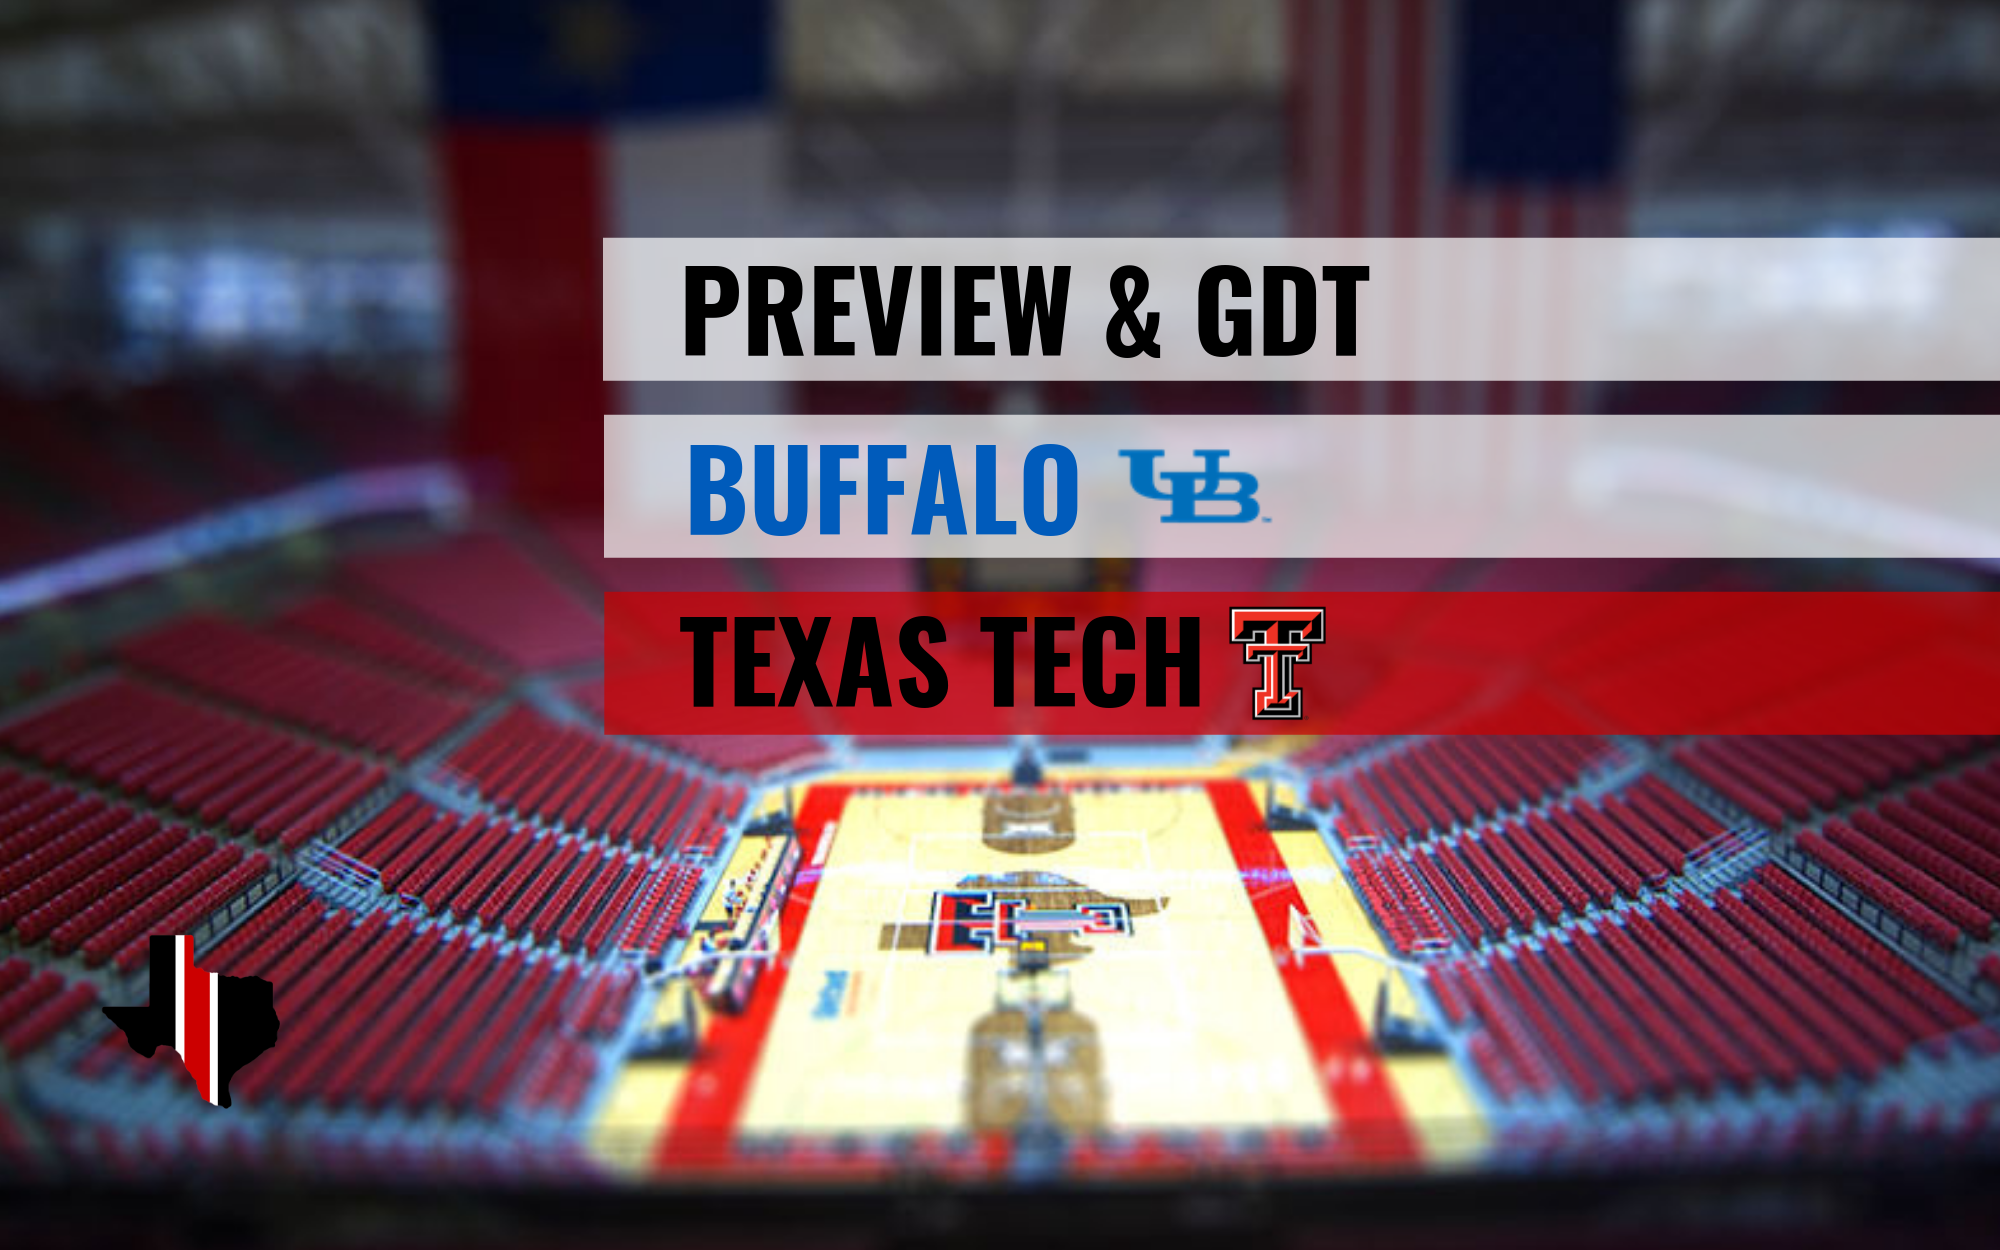 Preview & GDT: Buffalo vs. Texas Tech